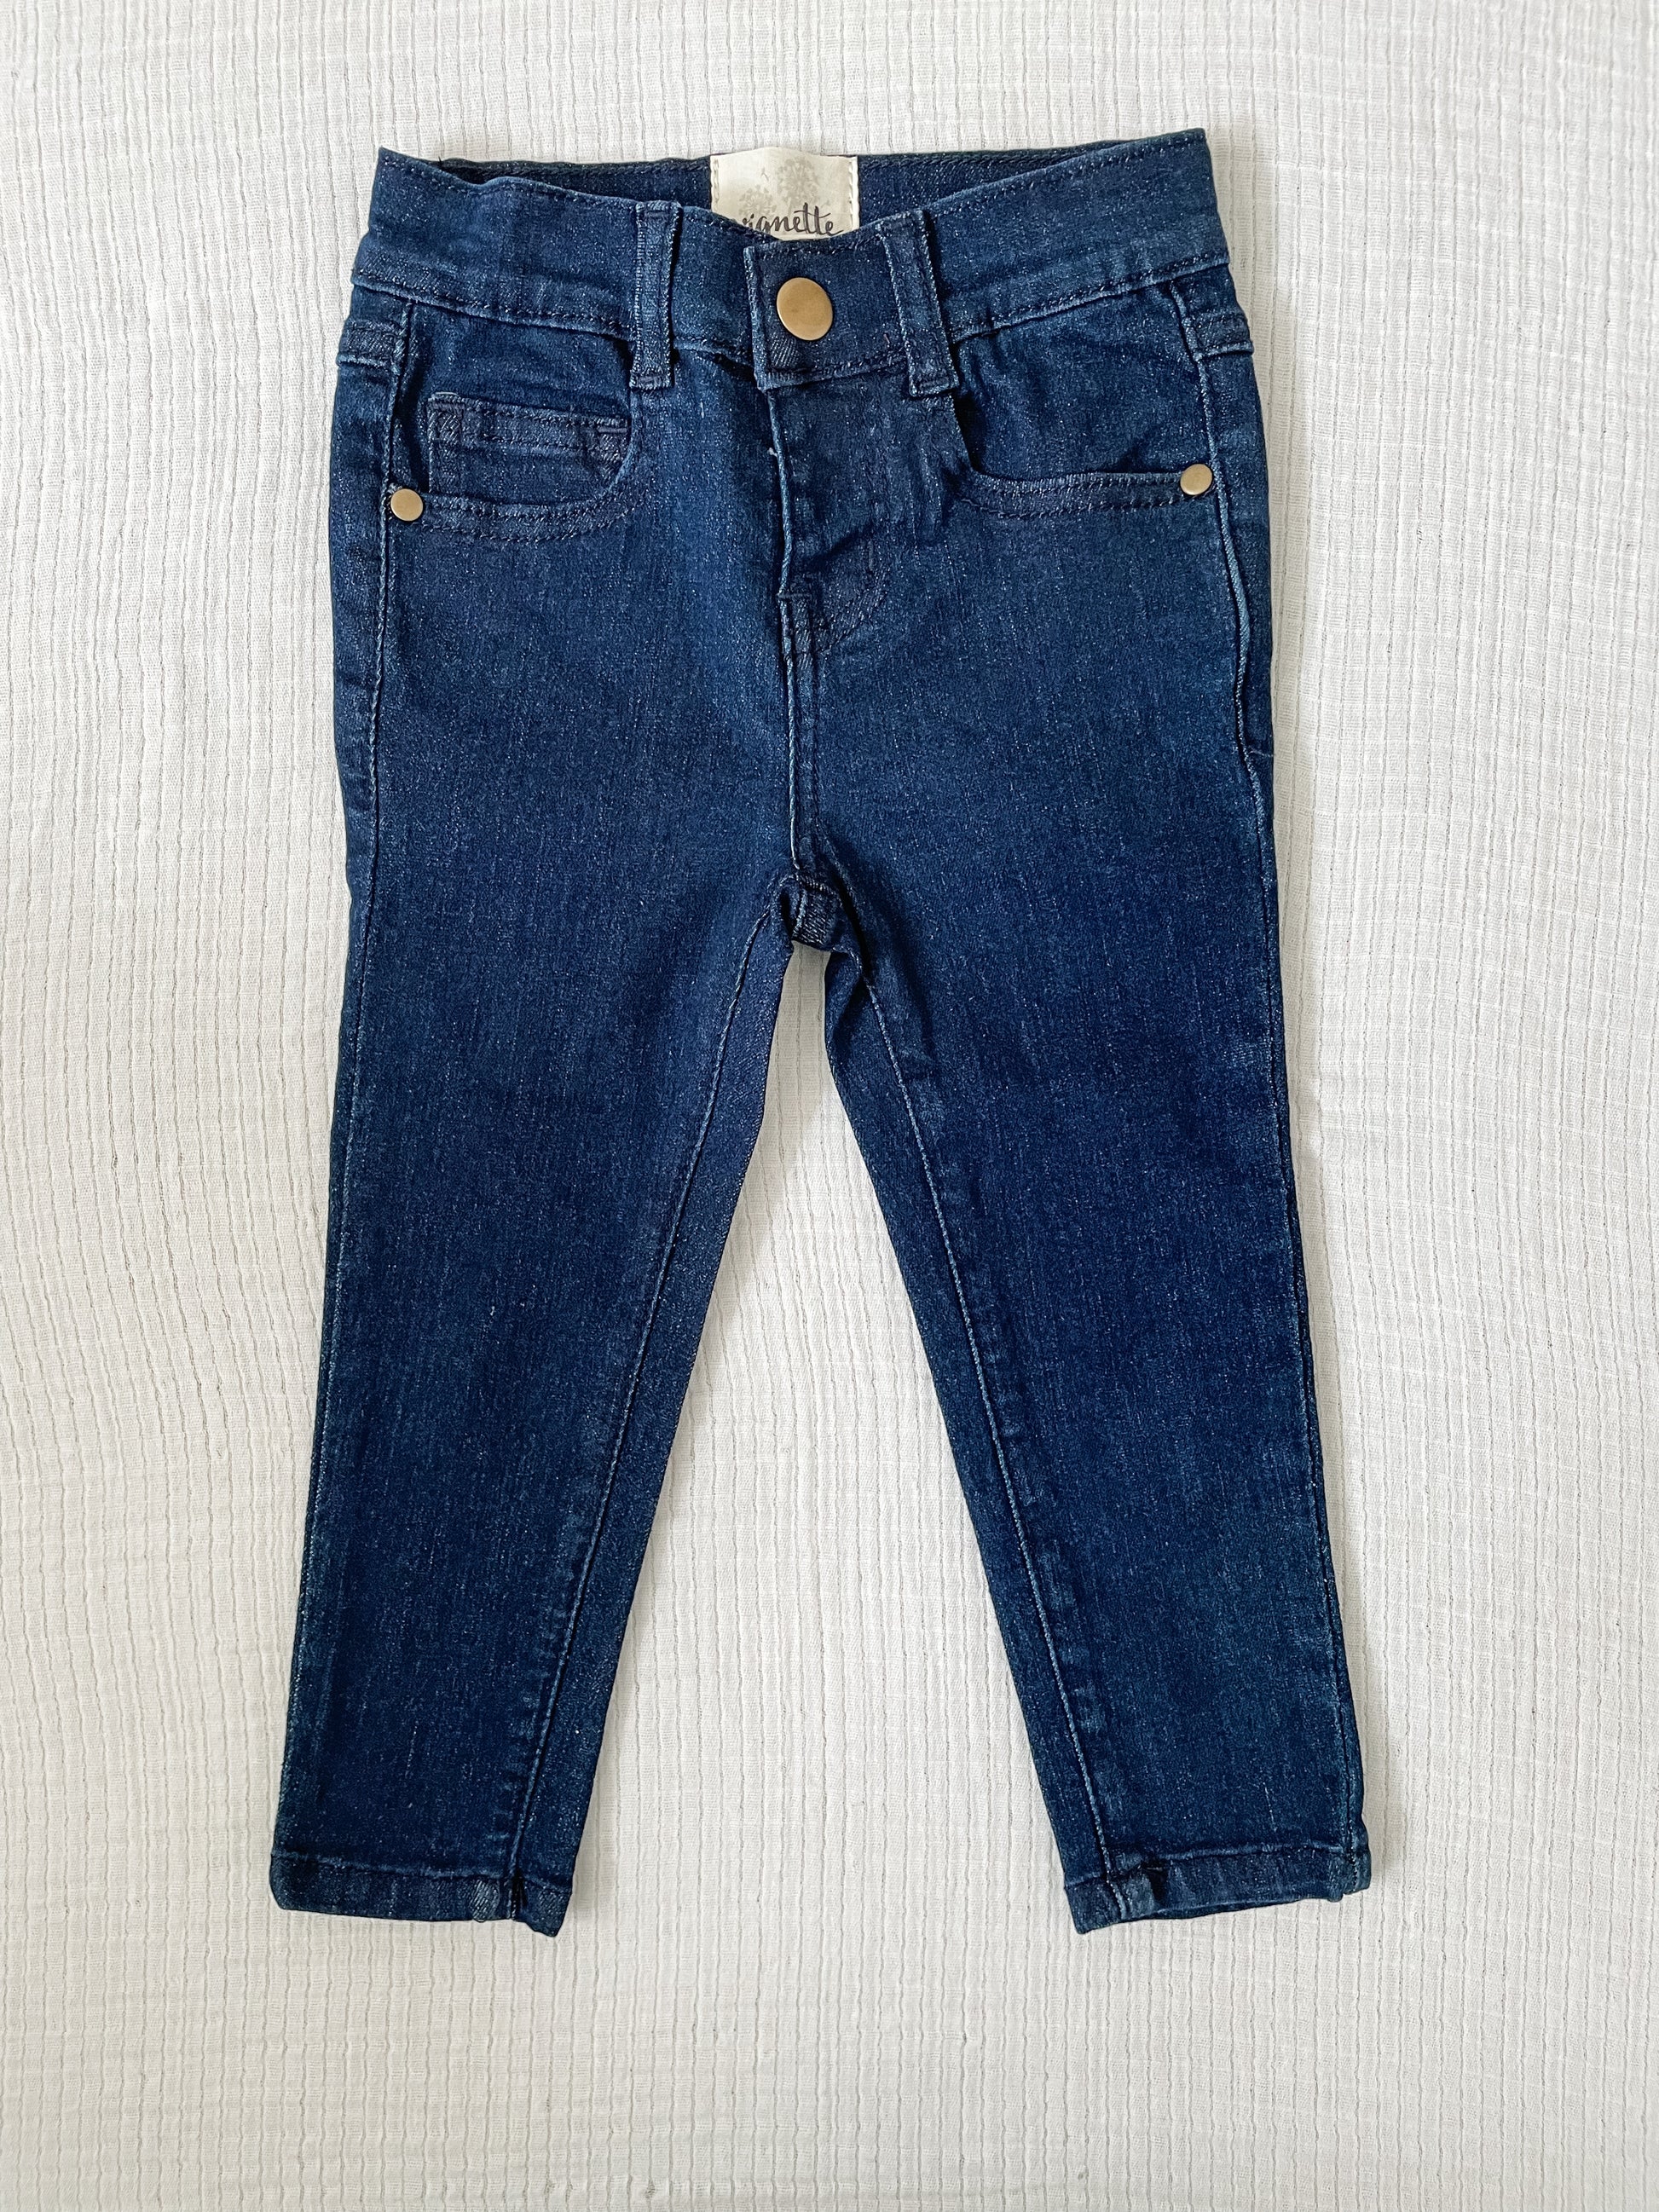 covelRachel Denim Jeans - Dark Blue Wash - Premium jeans from Vignette - Just $28! Shop now at covelgirls, kid bottom, Kids, Toddlercovel